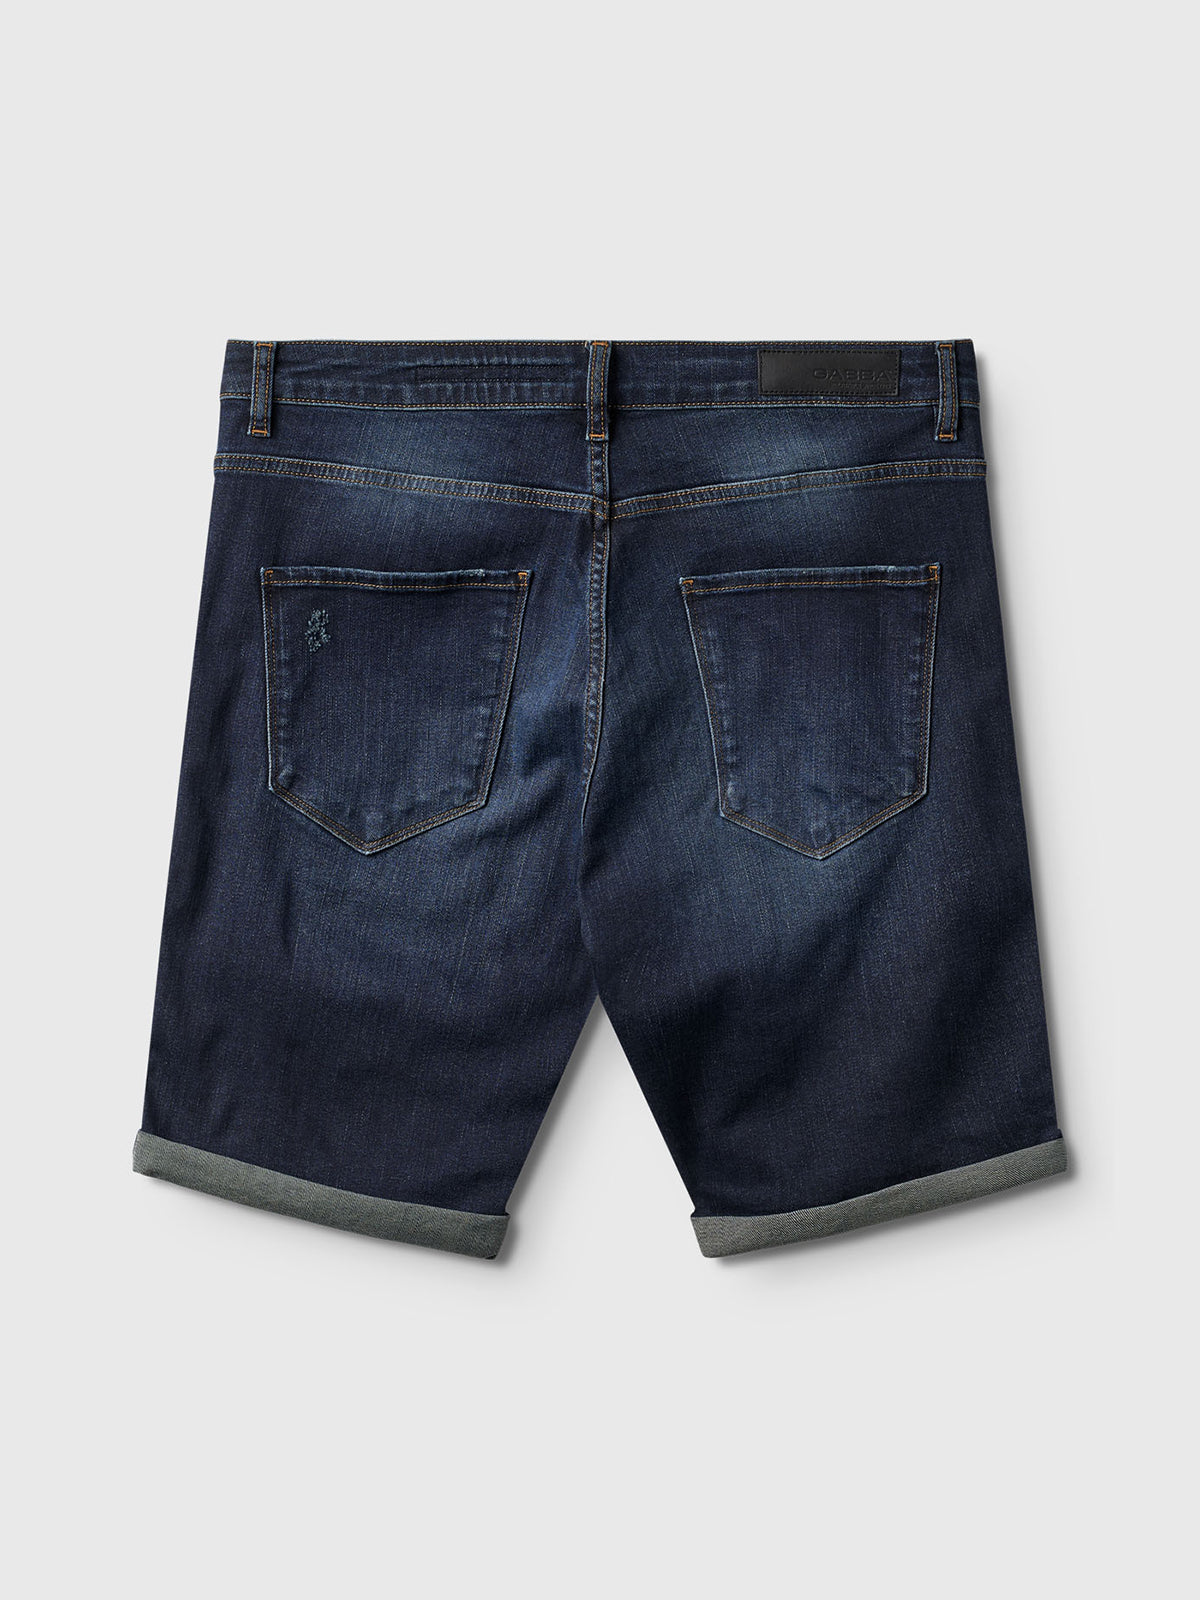 Hop K4664 Shorts - Dark Blue Denim